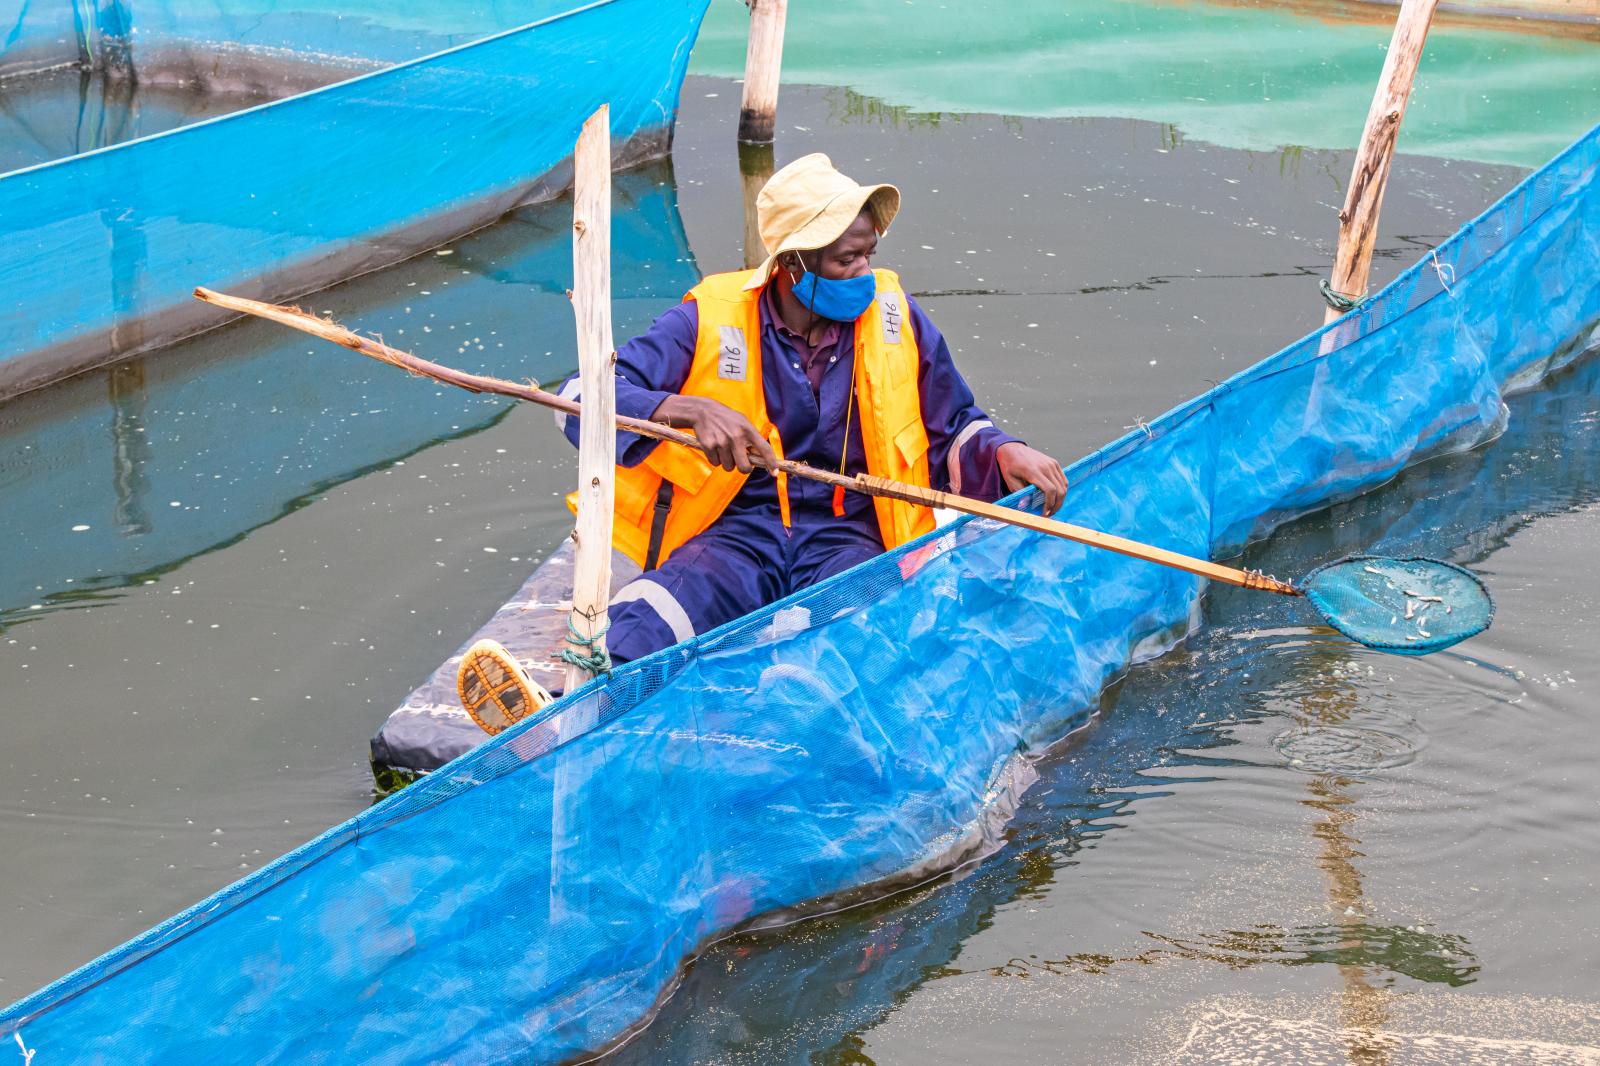 Sustainable Fishing Methods for Uganda